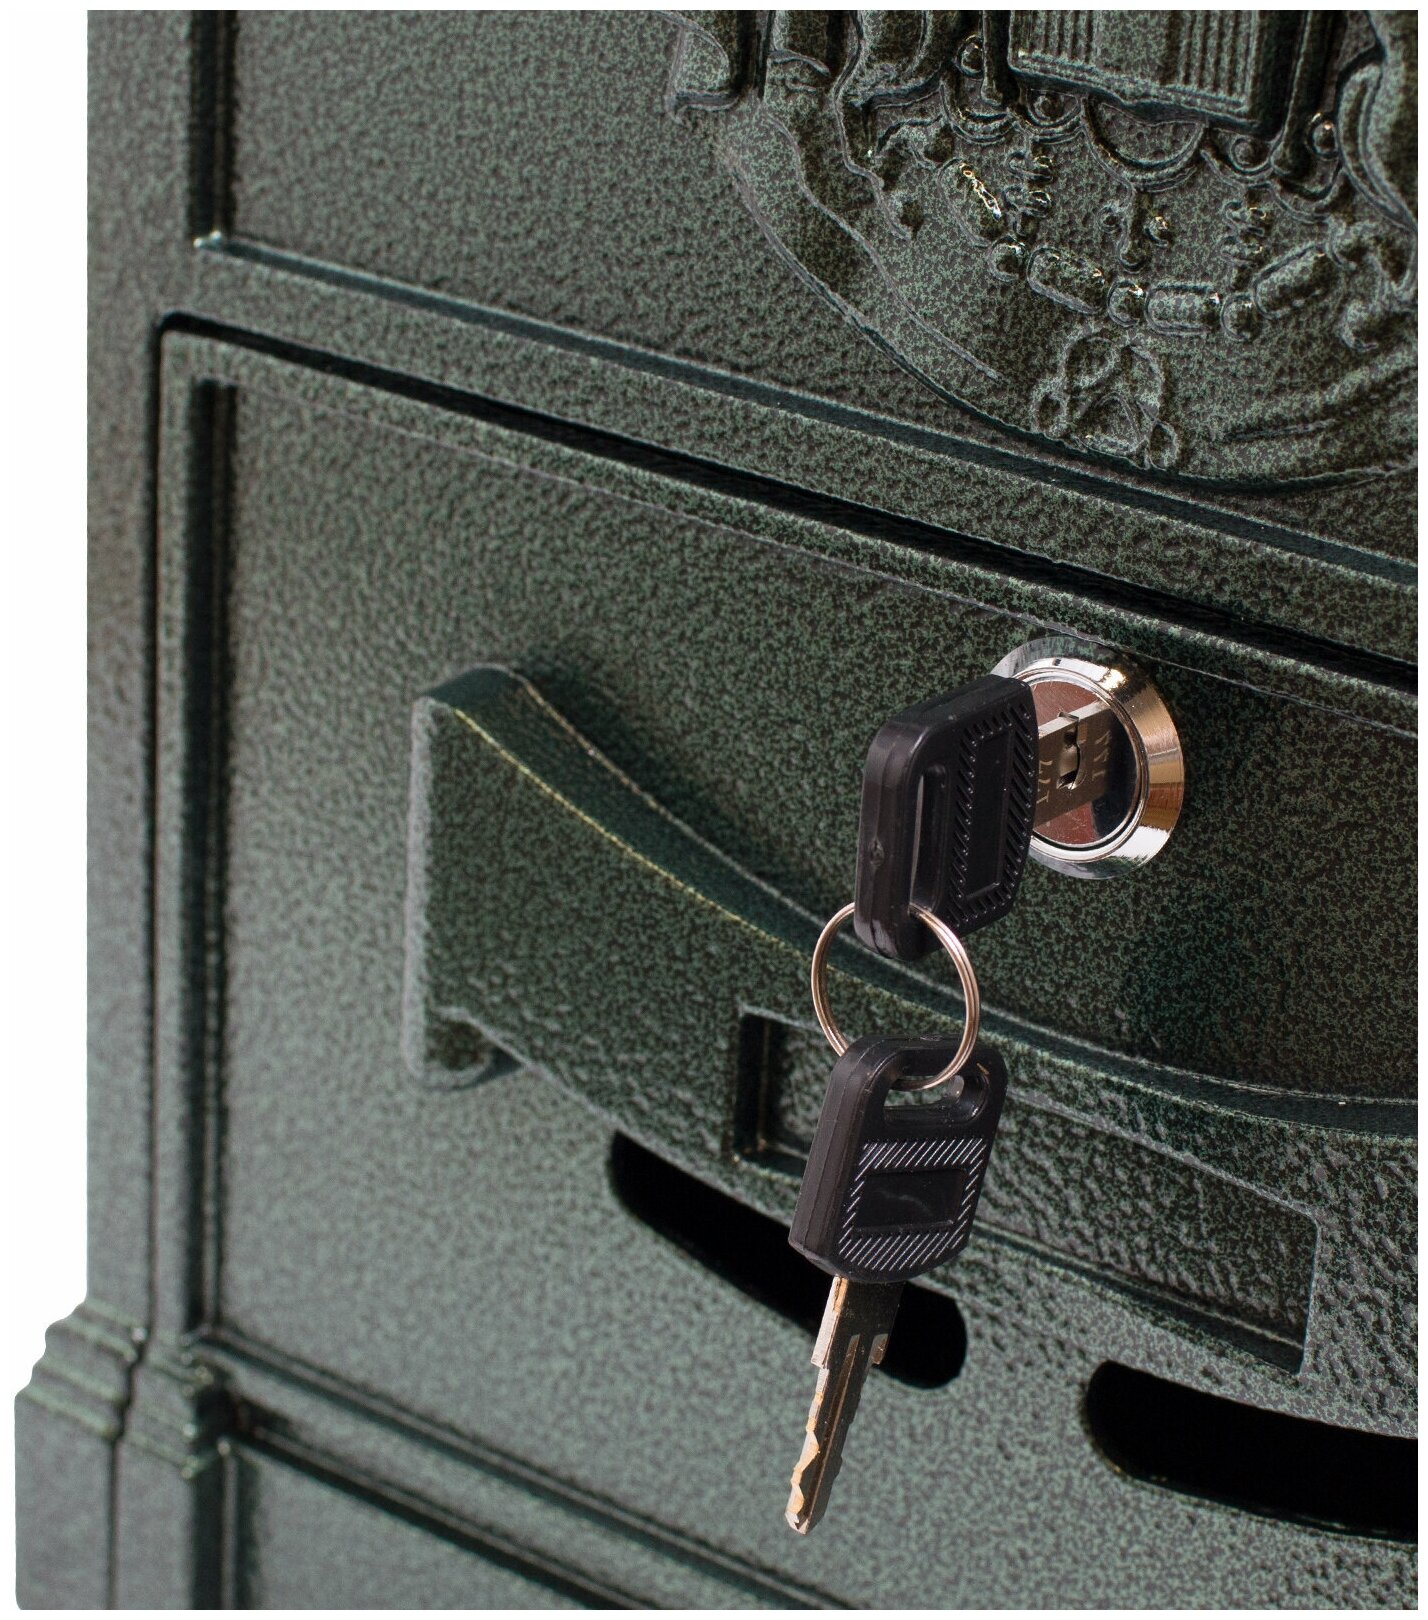 Почтовый ящик с замком уличный металлический для дома аллюр №4010 тёмно-зелёный